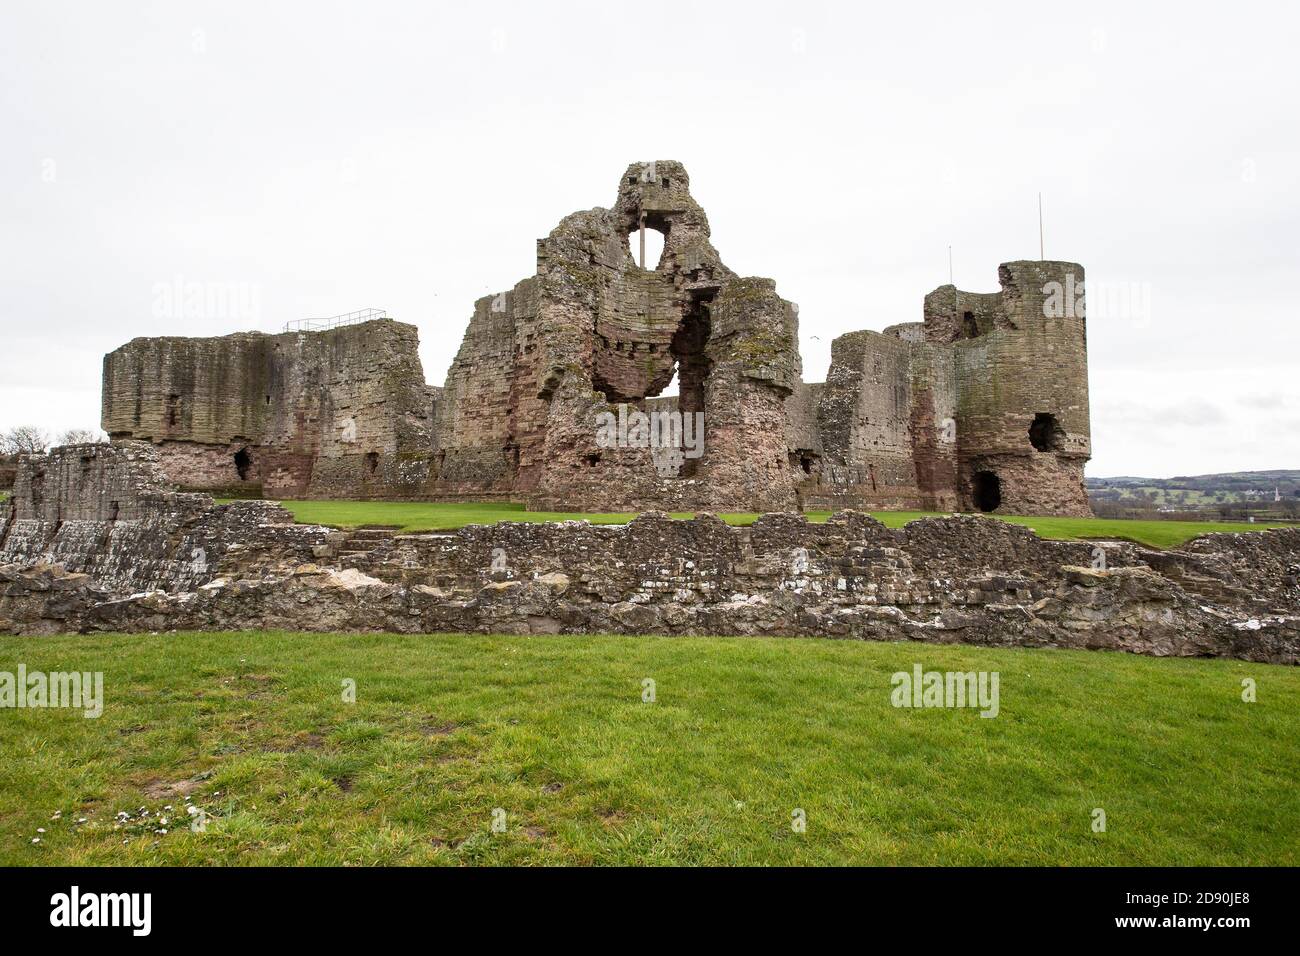 Les ruines du château de Rhuddlan , Castell Rhuddlan construit sous le règne d'Edward 1 en 1277 et dans le comté gallois de Denbighshire Royaume-Uni Banque D'Images